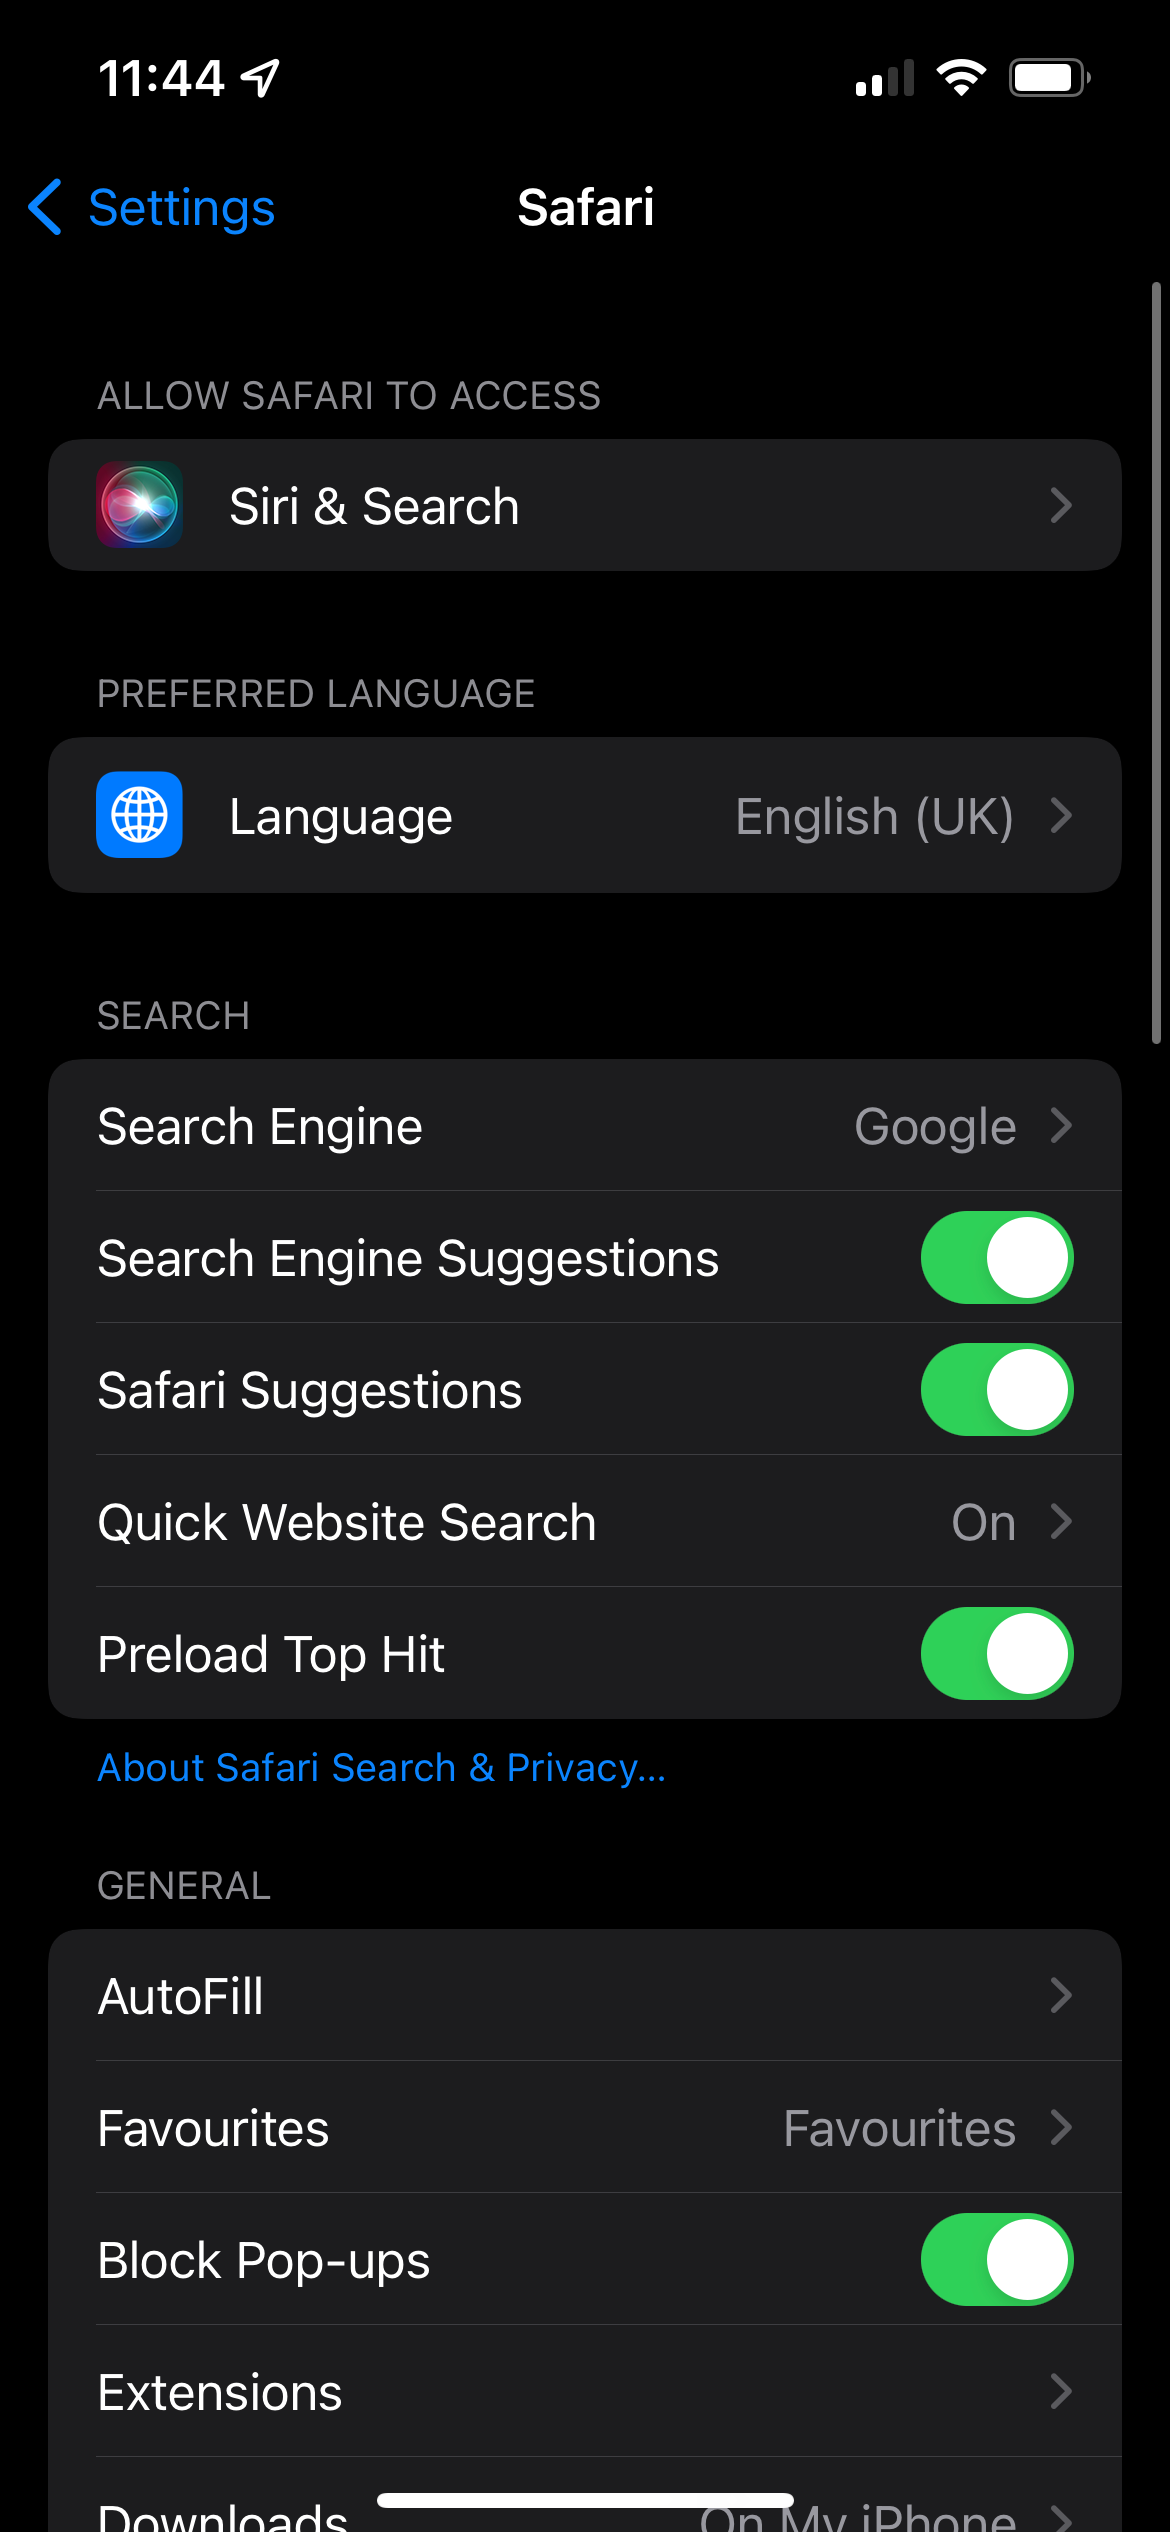 The safari app in settings